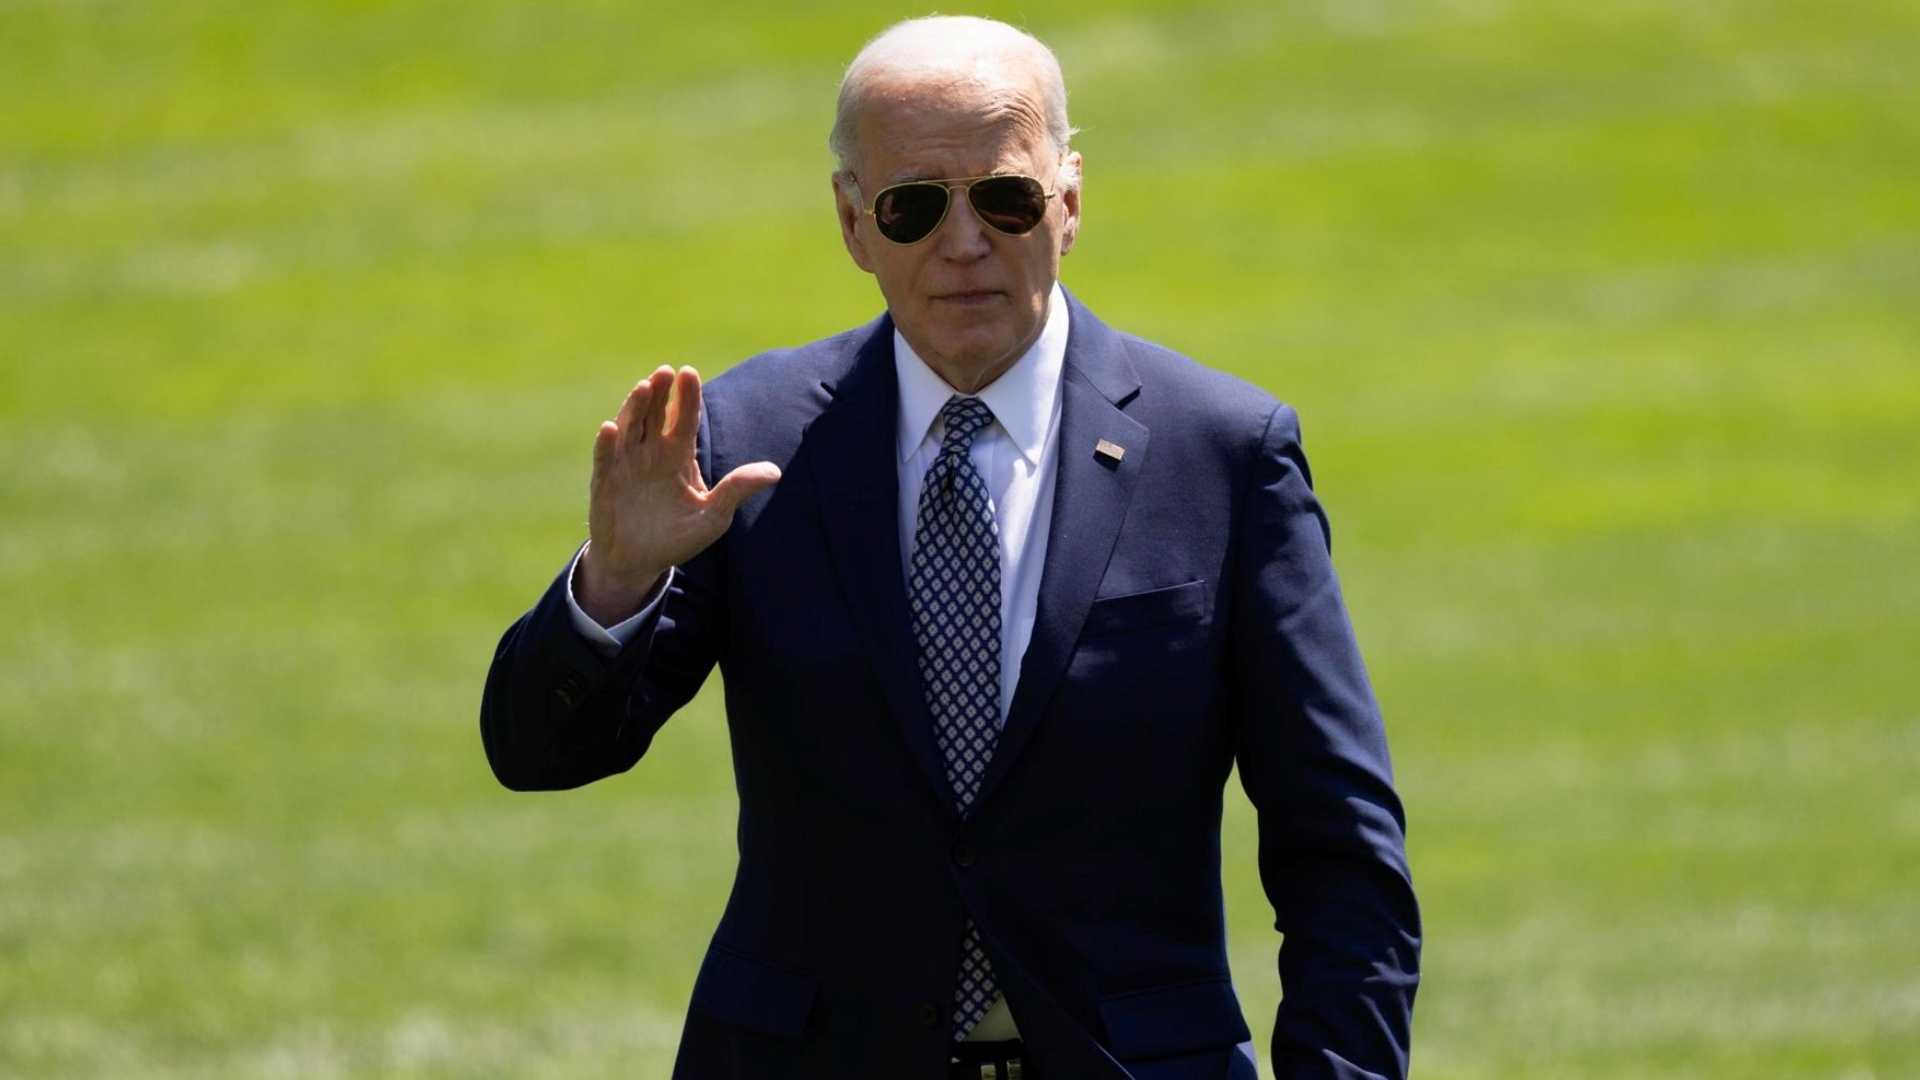 El presidente Joe Biden abrió por primera vez la puerta al debate con Donald Trump